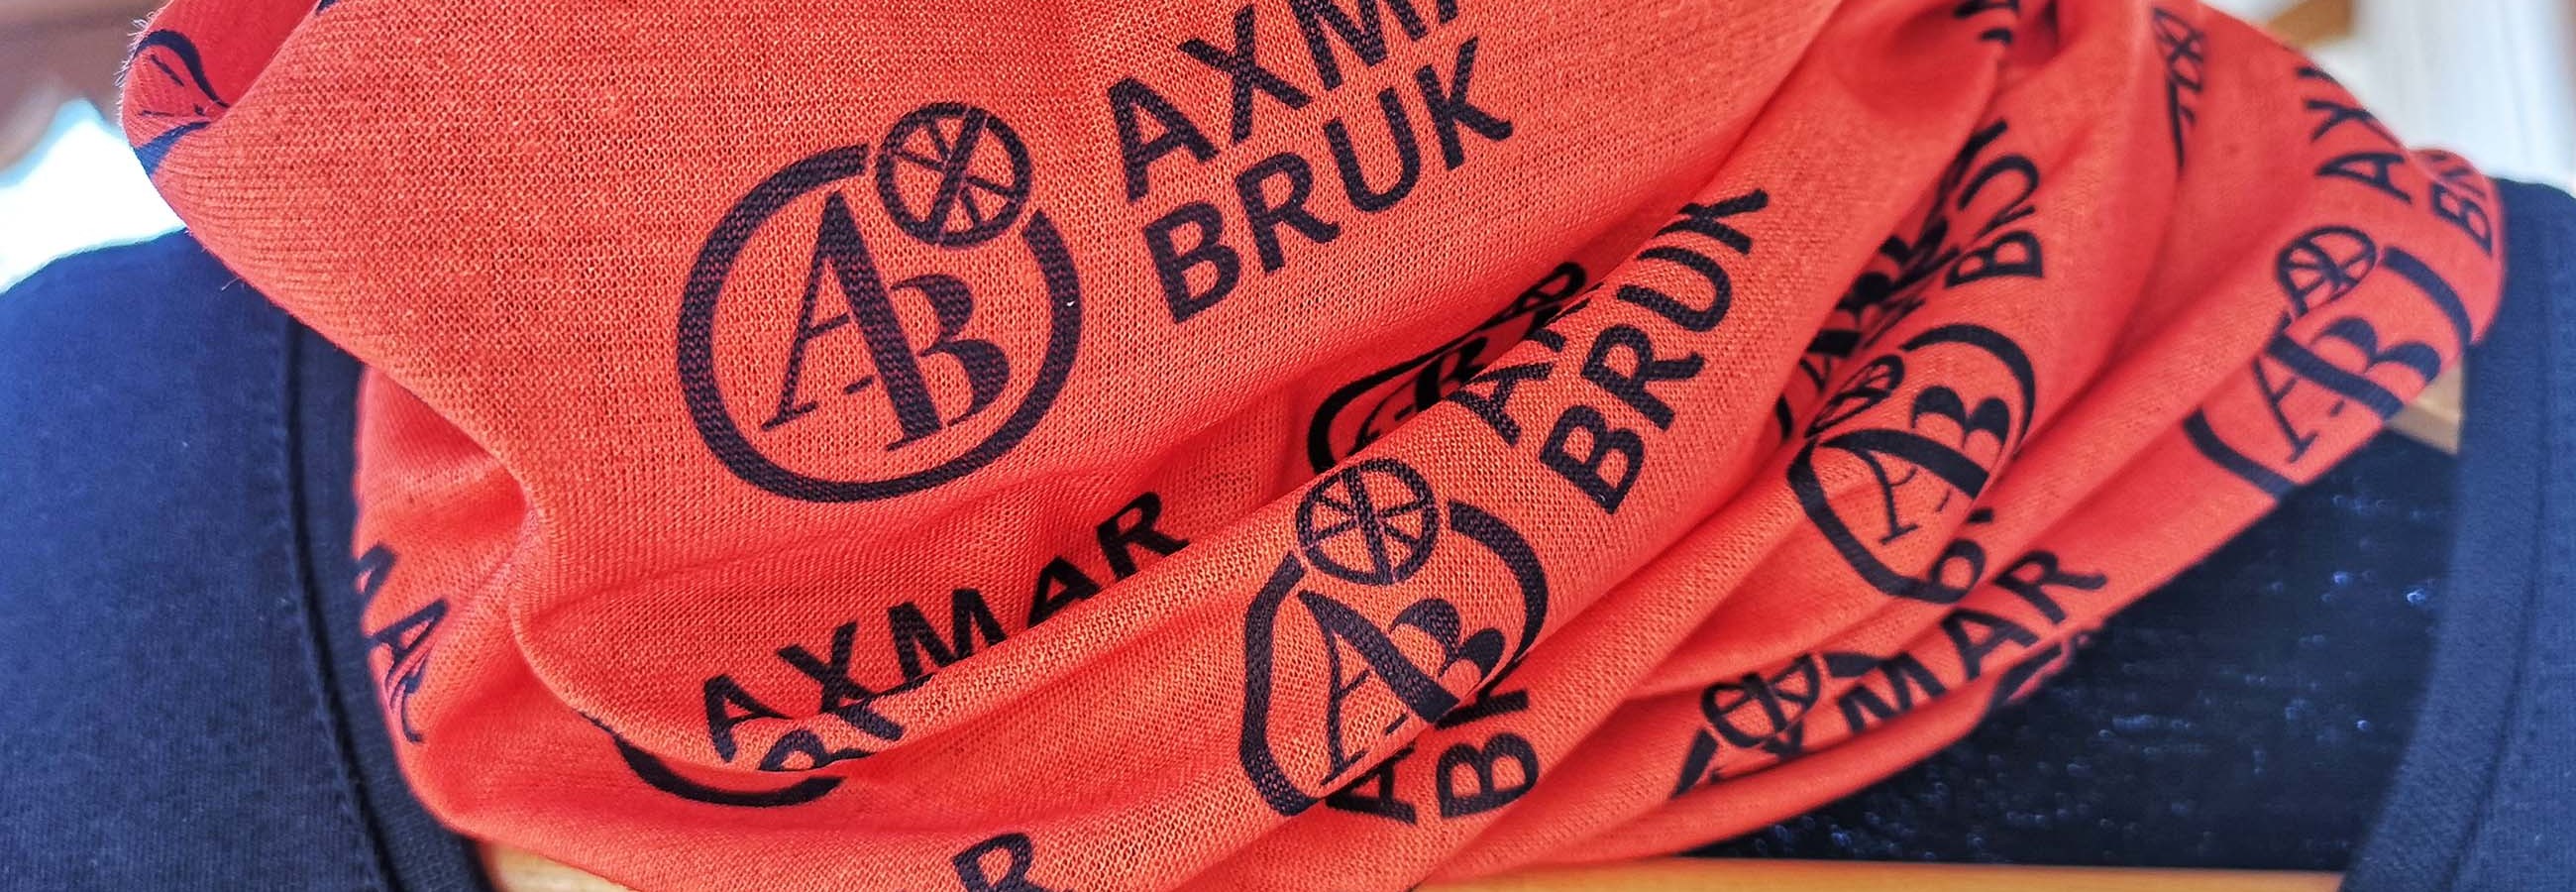 Profilkläder från Axmar bruk – foto Aja Axlund